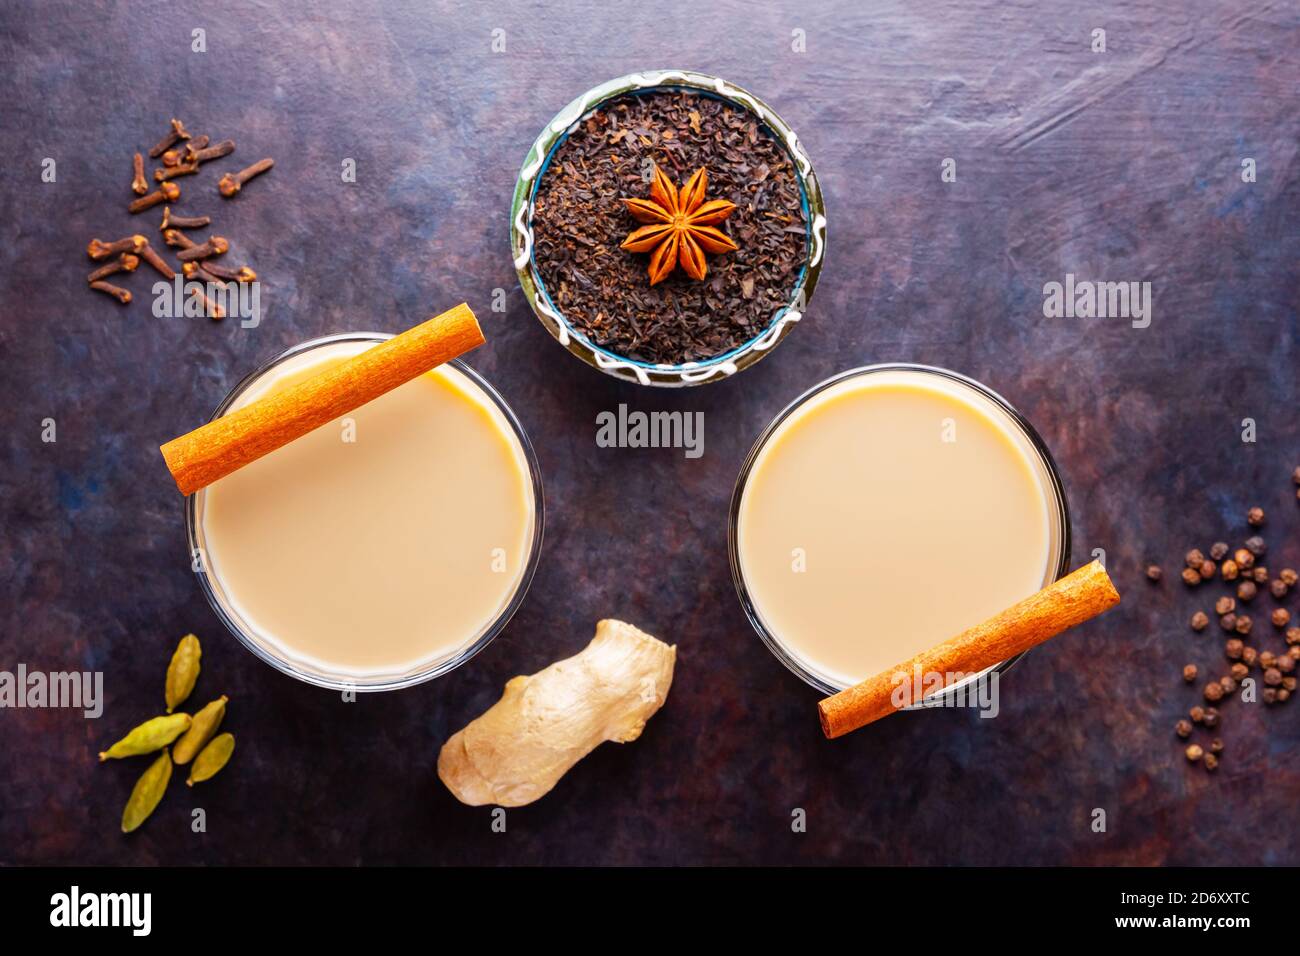 Tè Masala chai. Bevanda indiana tradizionale - tè masala con varie spezie. Due bicchieri con tè masala su sfondo scuro Foto Stock